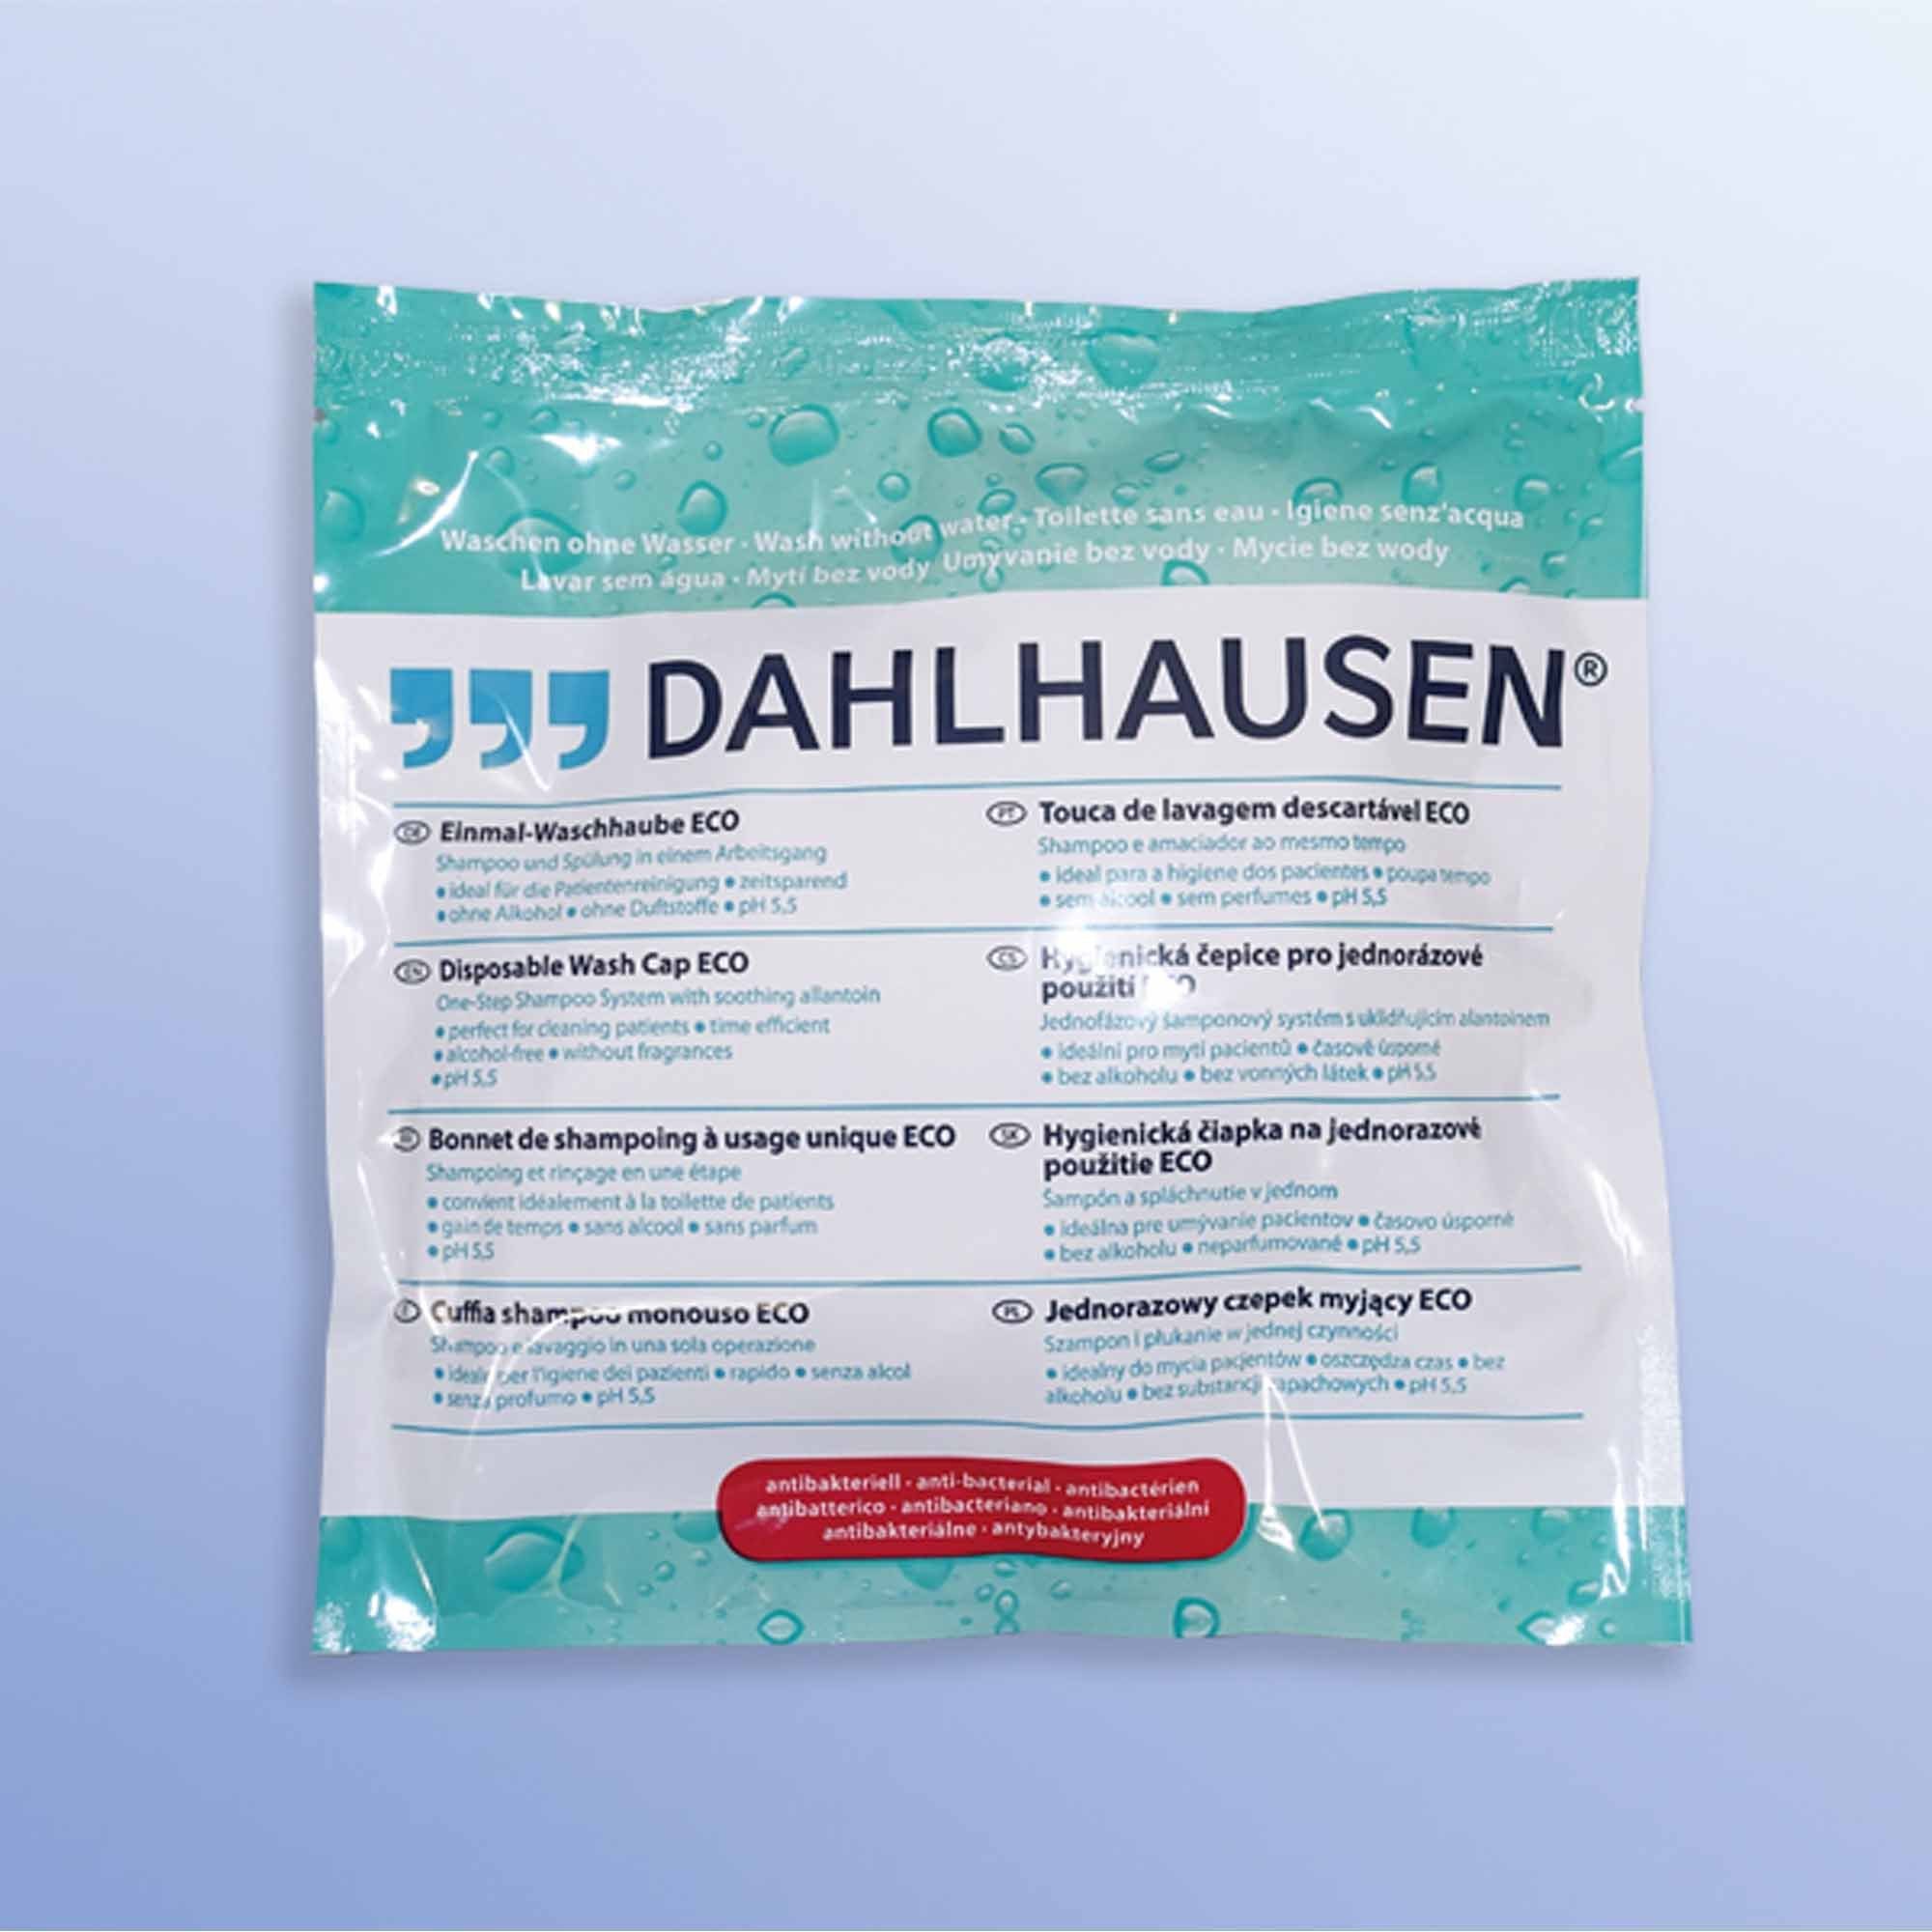 Zögern Sie nicht, zu bestellen P.J.Dahlhausen & Co.GmbH Duschhaube antibakteriell ECO Dahlhausen Waschhaube